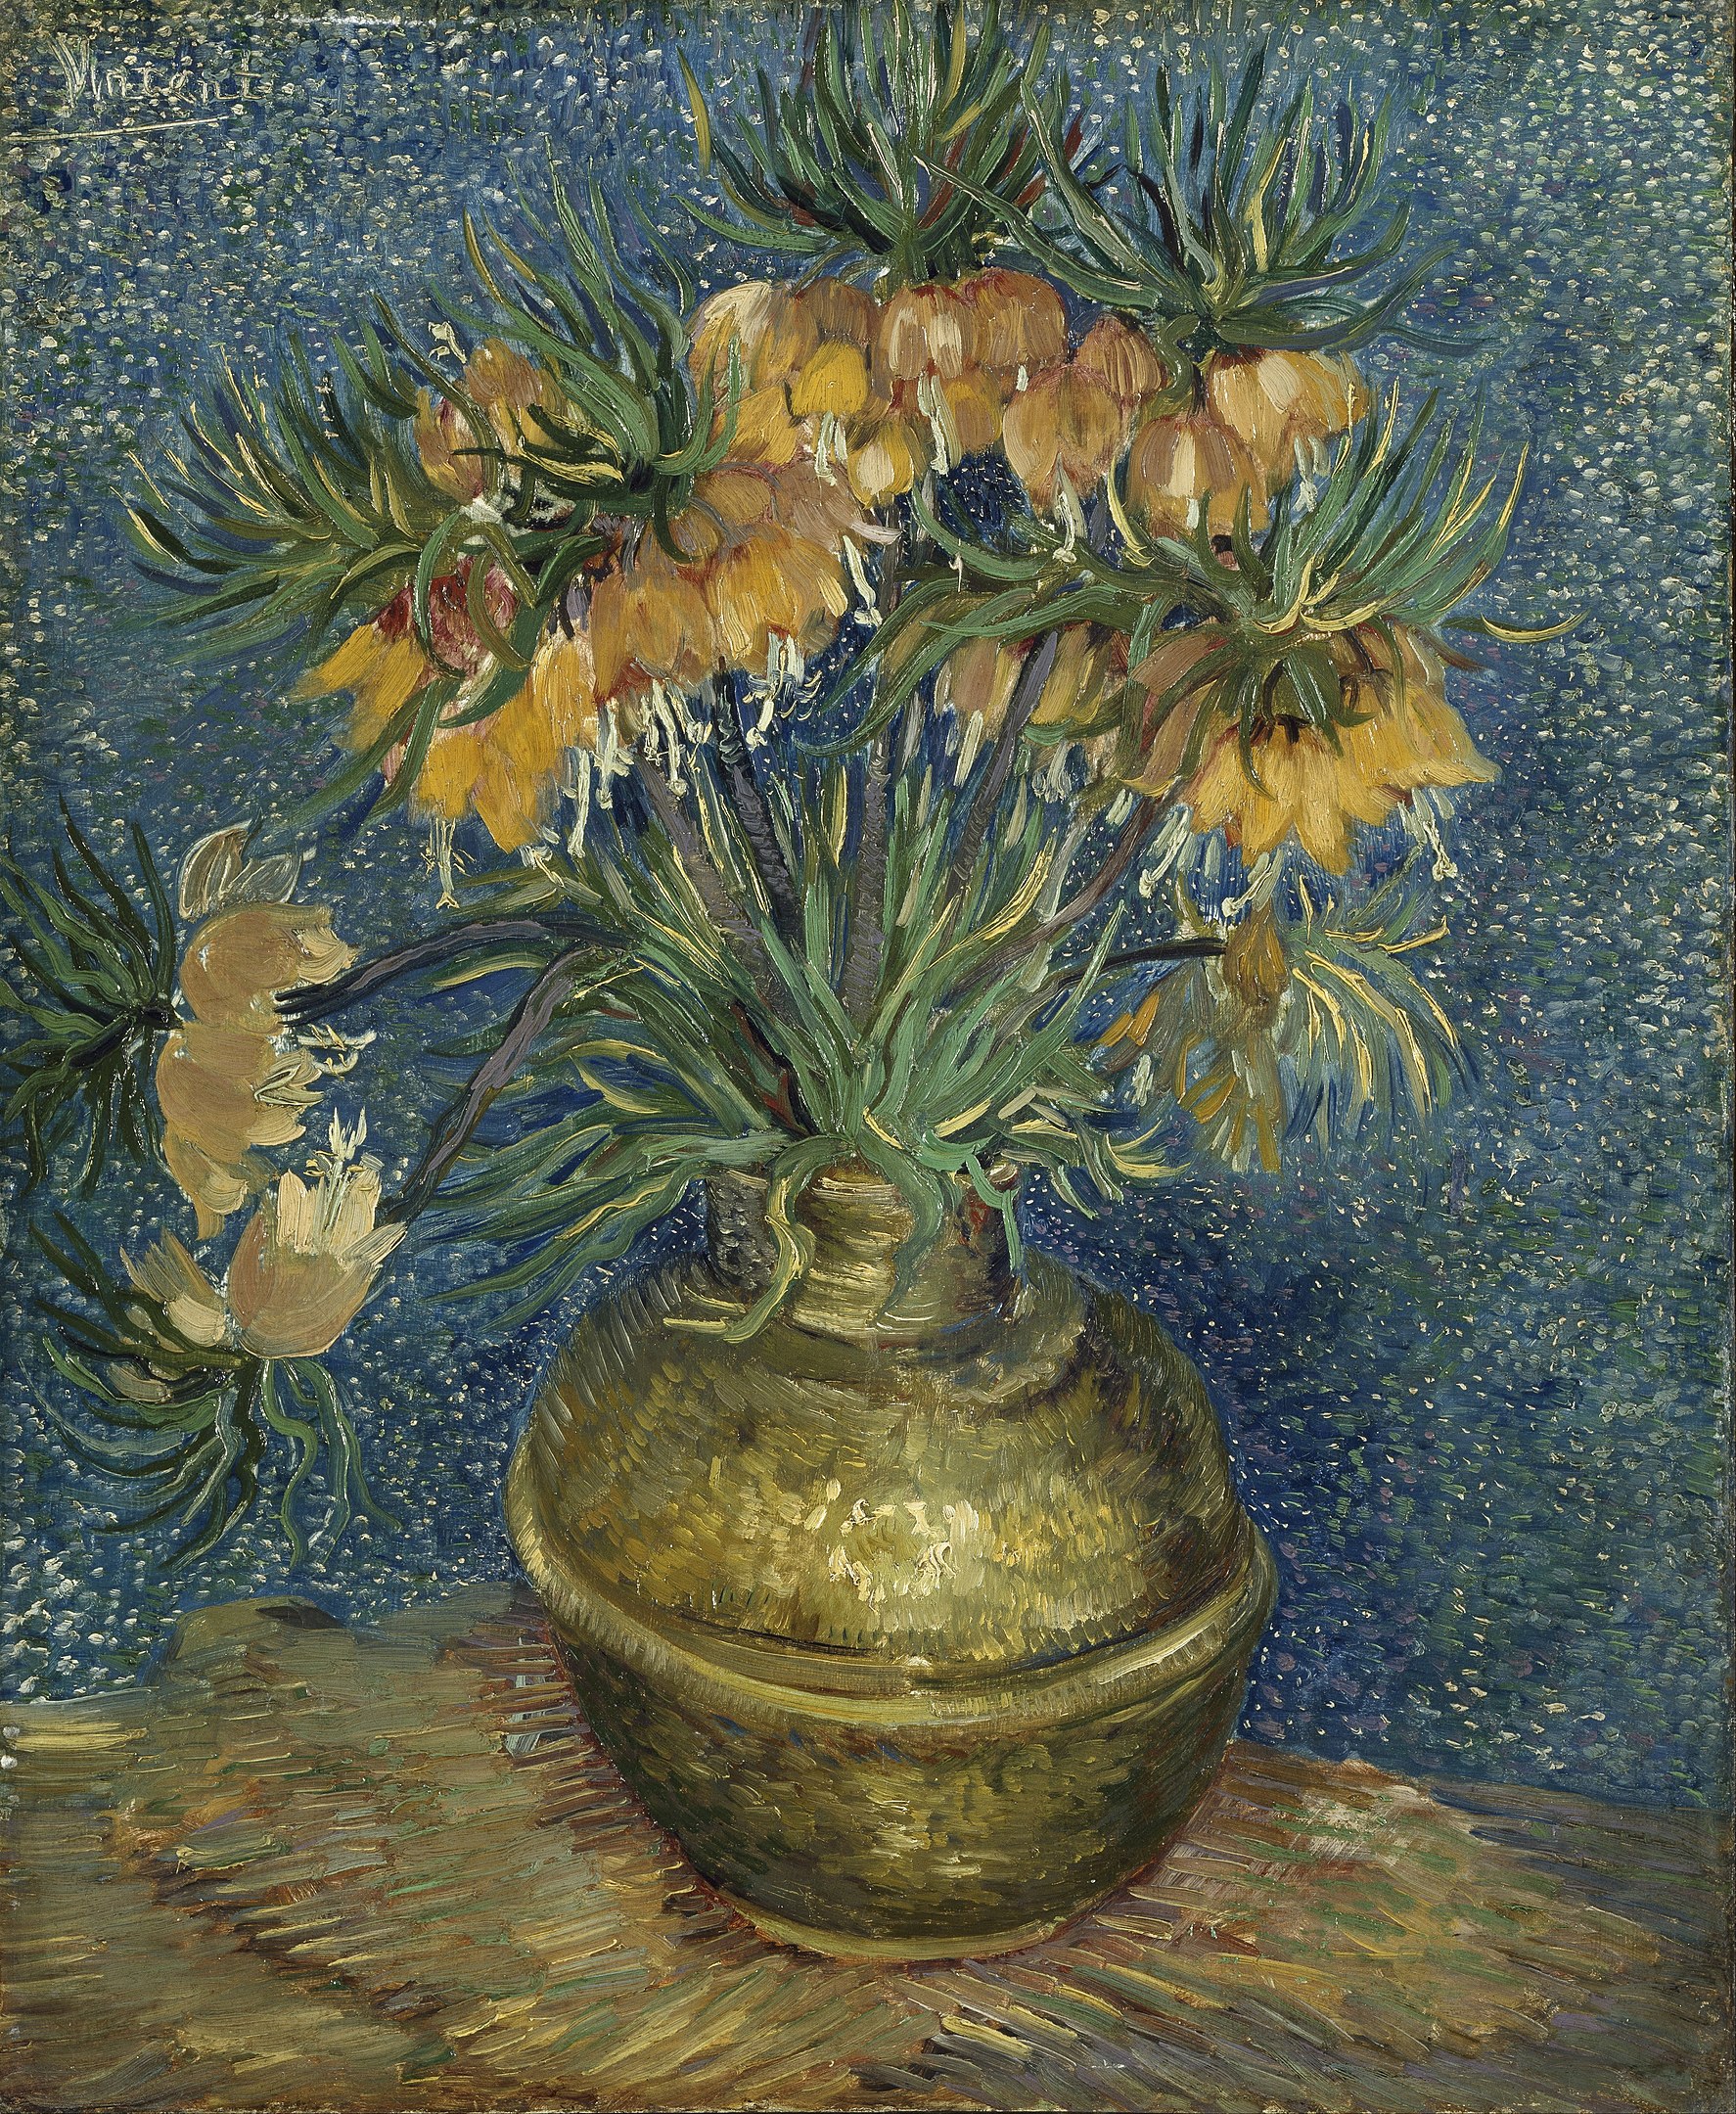 裝在銅花瓶裏的皇冠貝母 by Vincent van Gogh - 1887 - 60 x 76 cm 